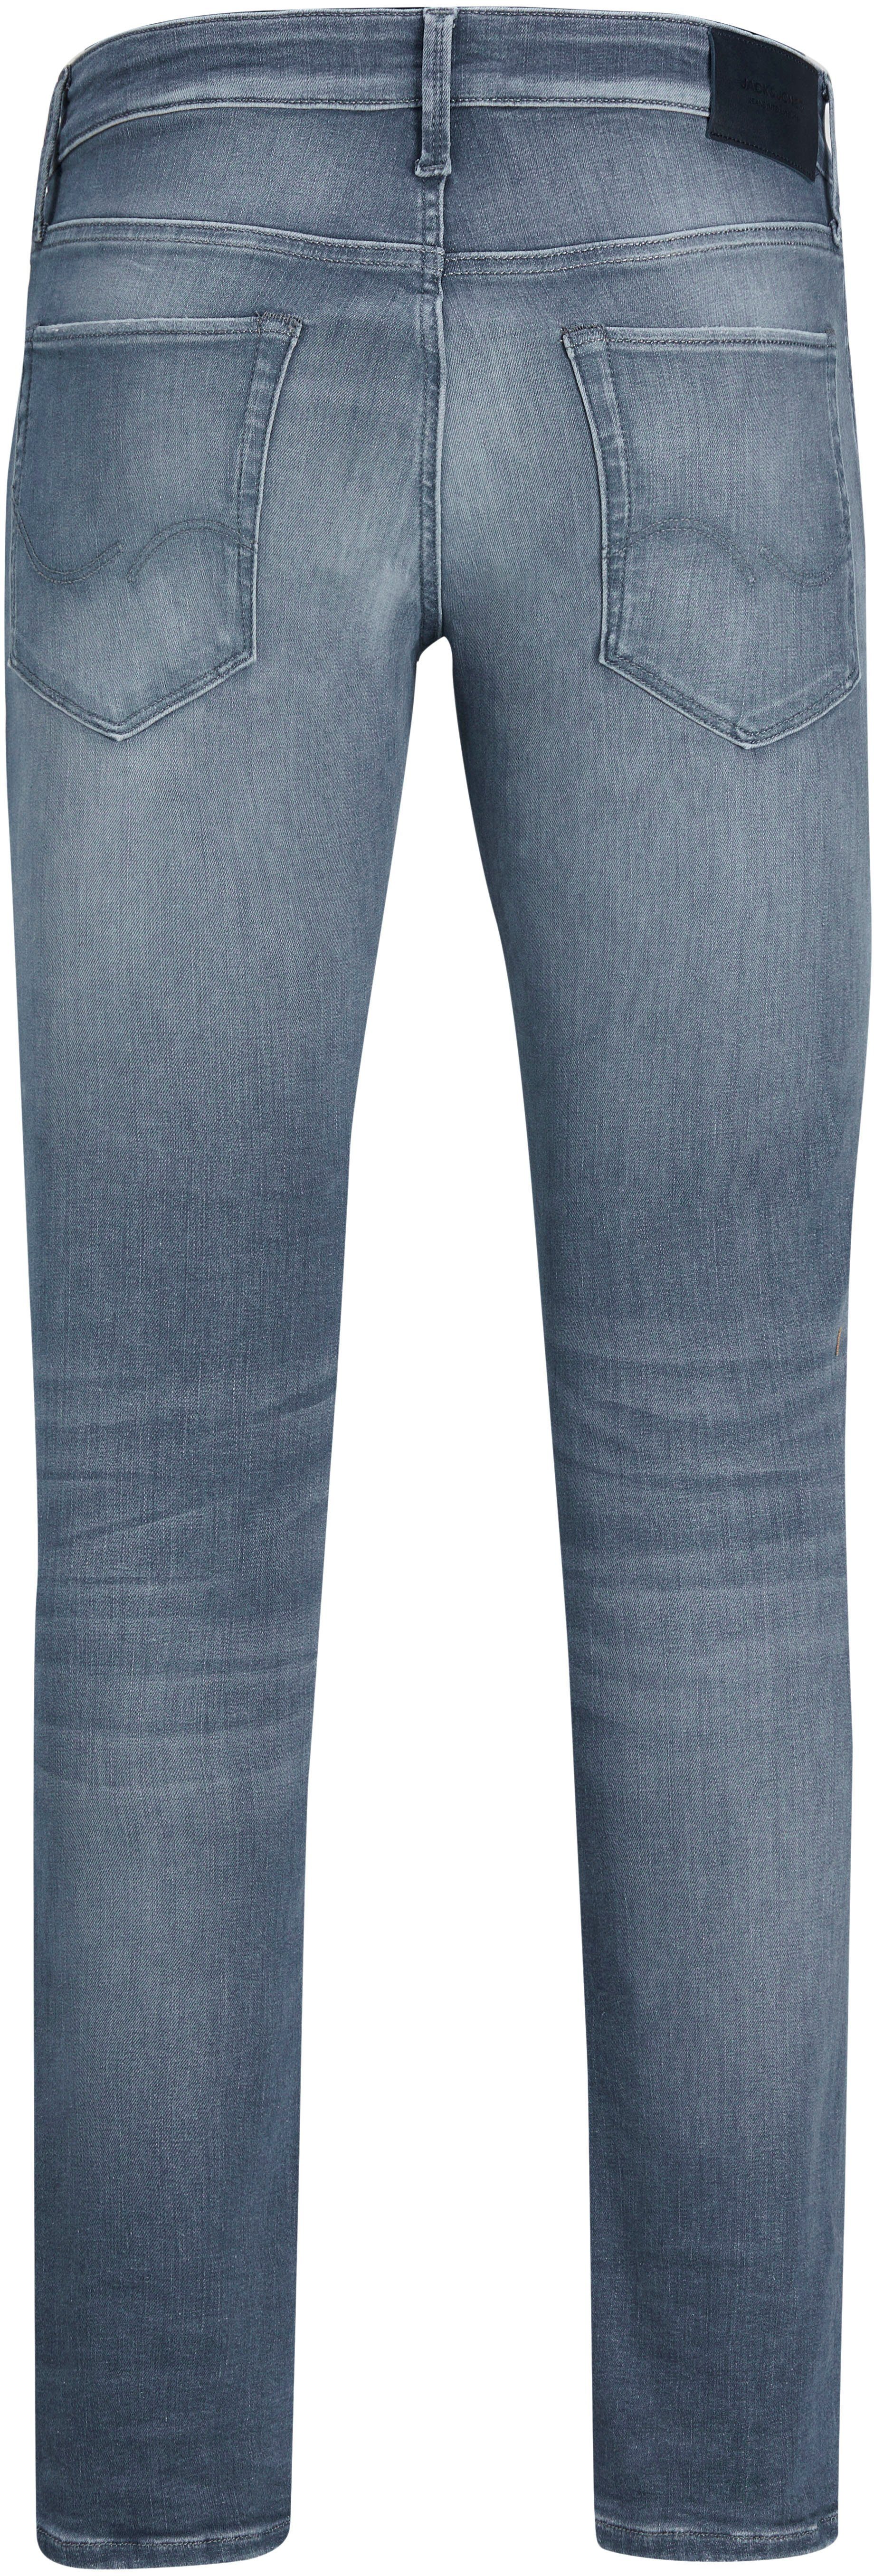 GLENN & Slim-fit-Jeans hellblau Jack Jones ICON